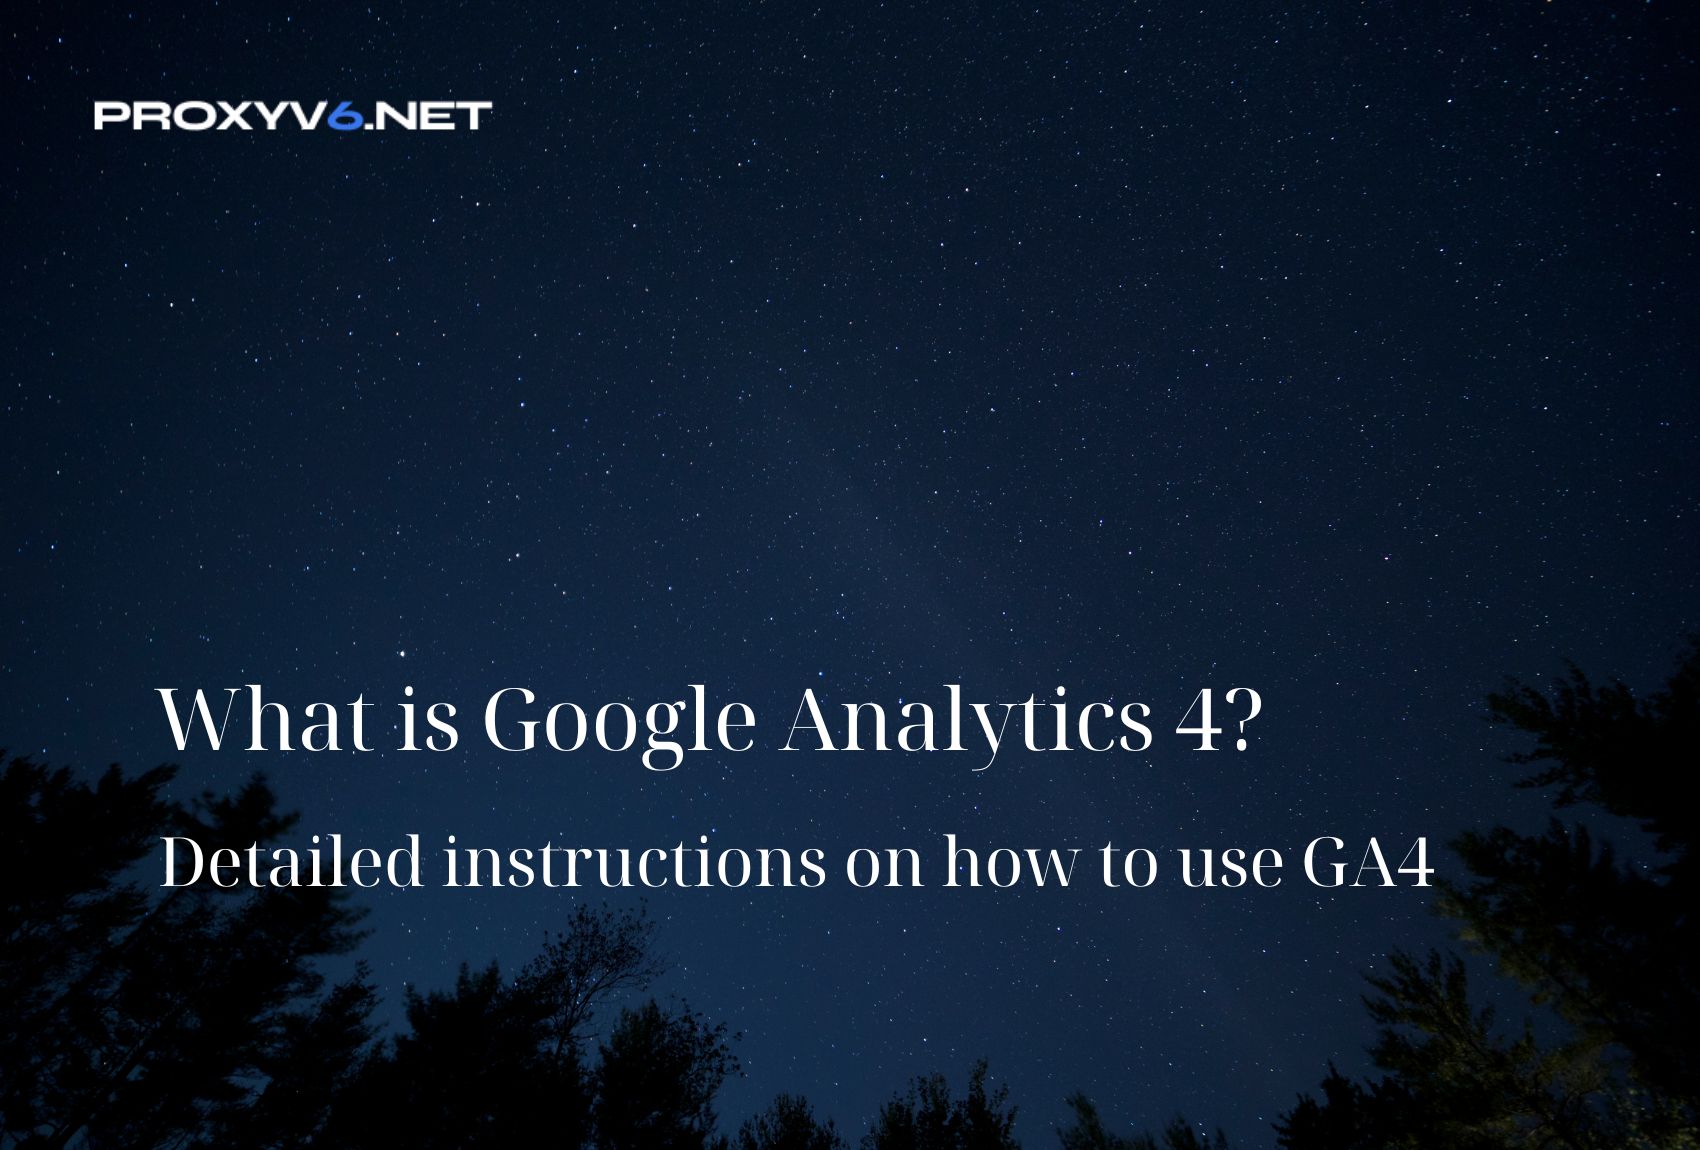 Google Analytics 4 là gì? Hướng dẫn chi tiết cách sử dụng GA4